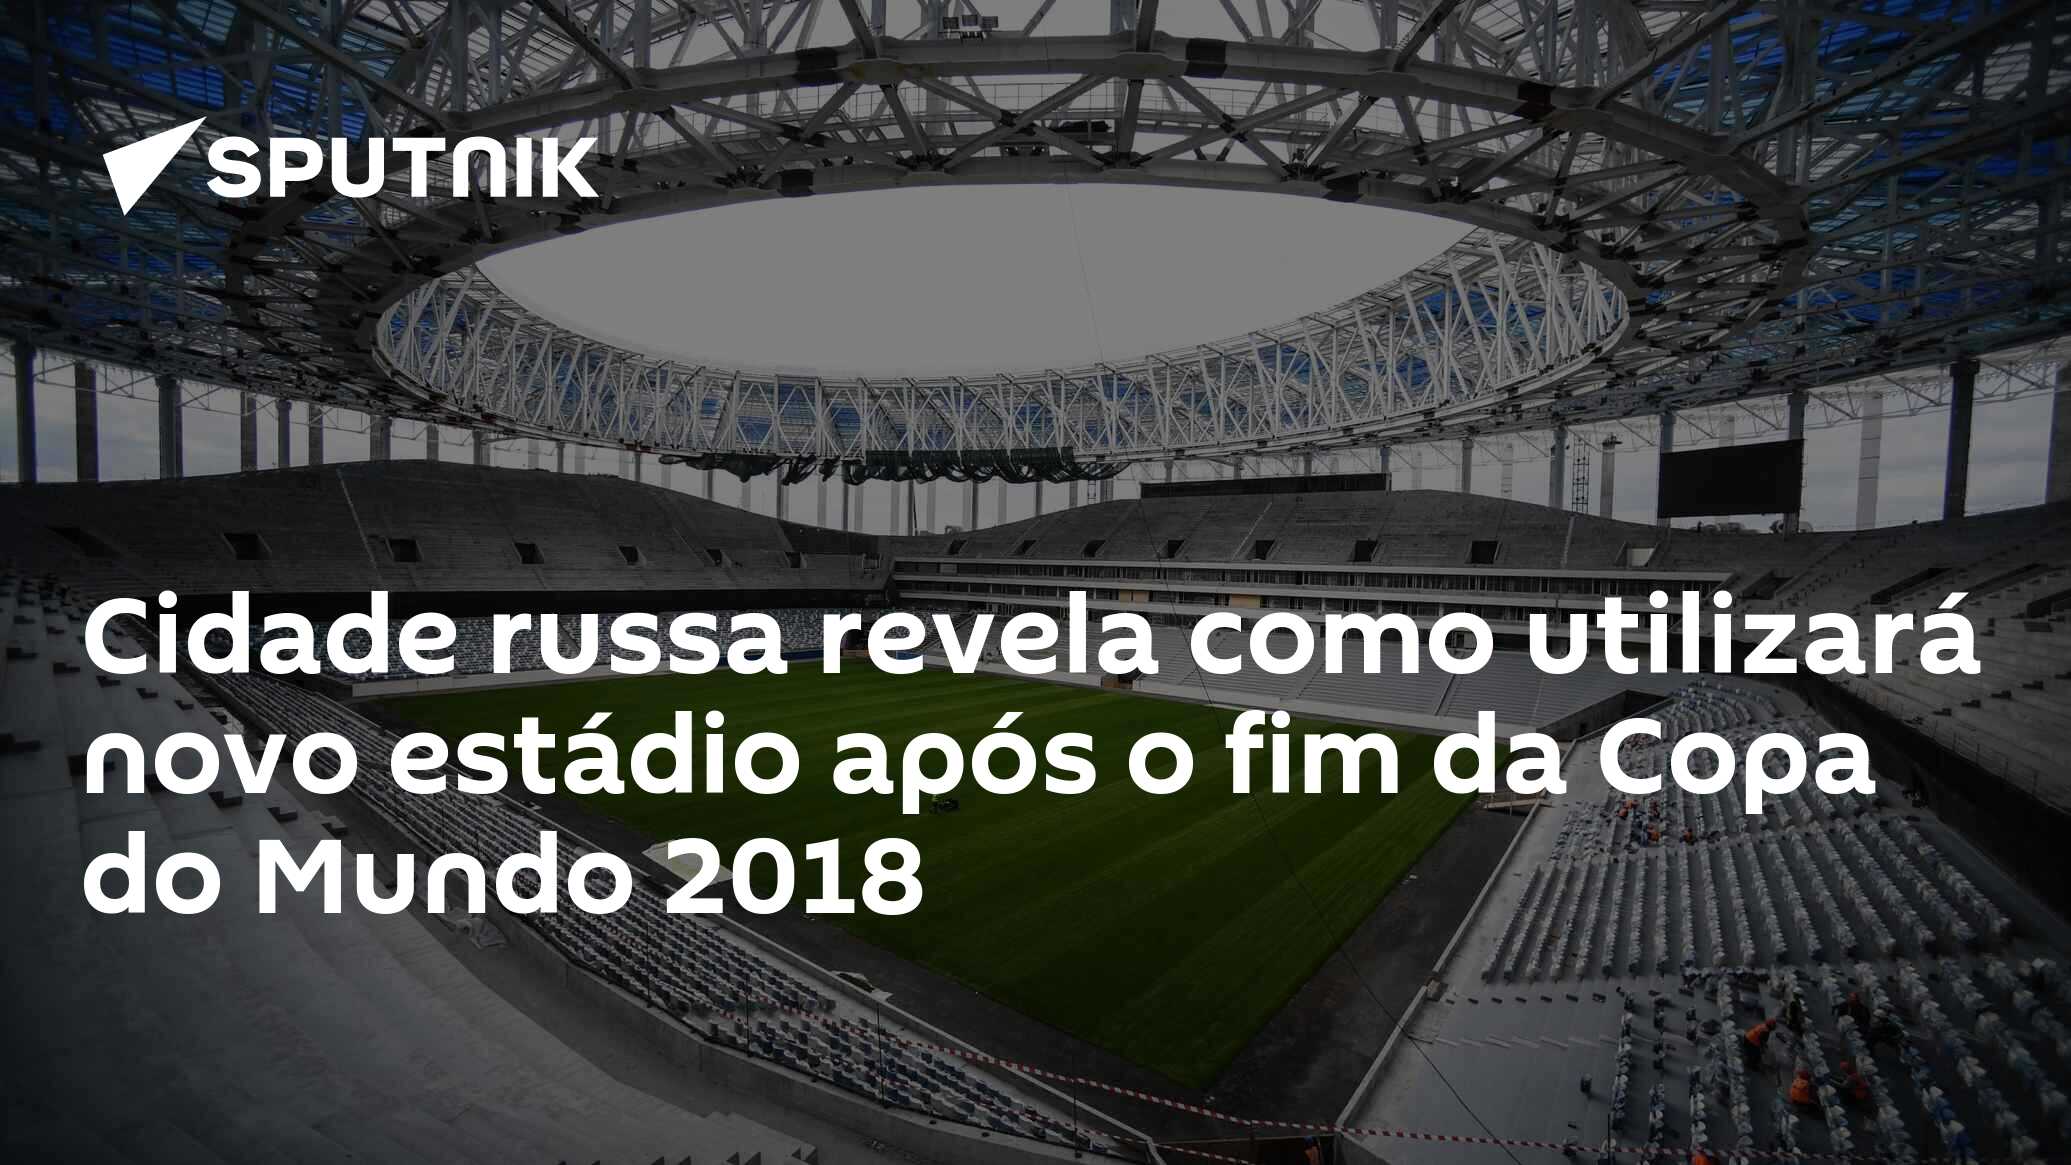 Fifa revela logo da Copa do Mundo de 2018 da Rússia